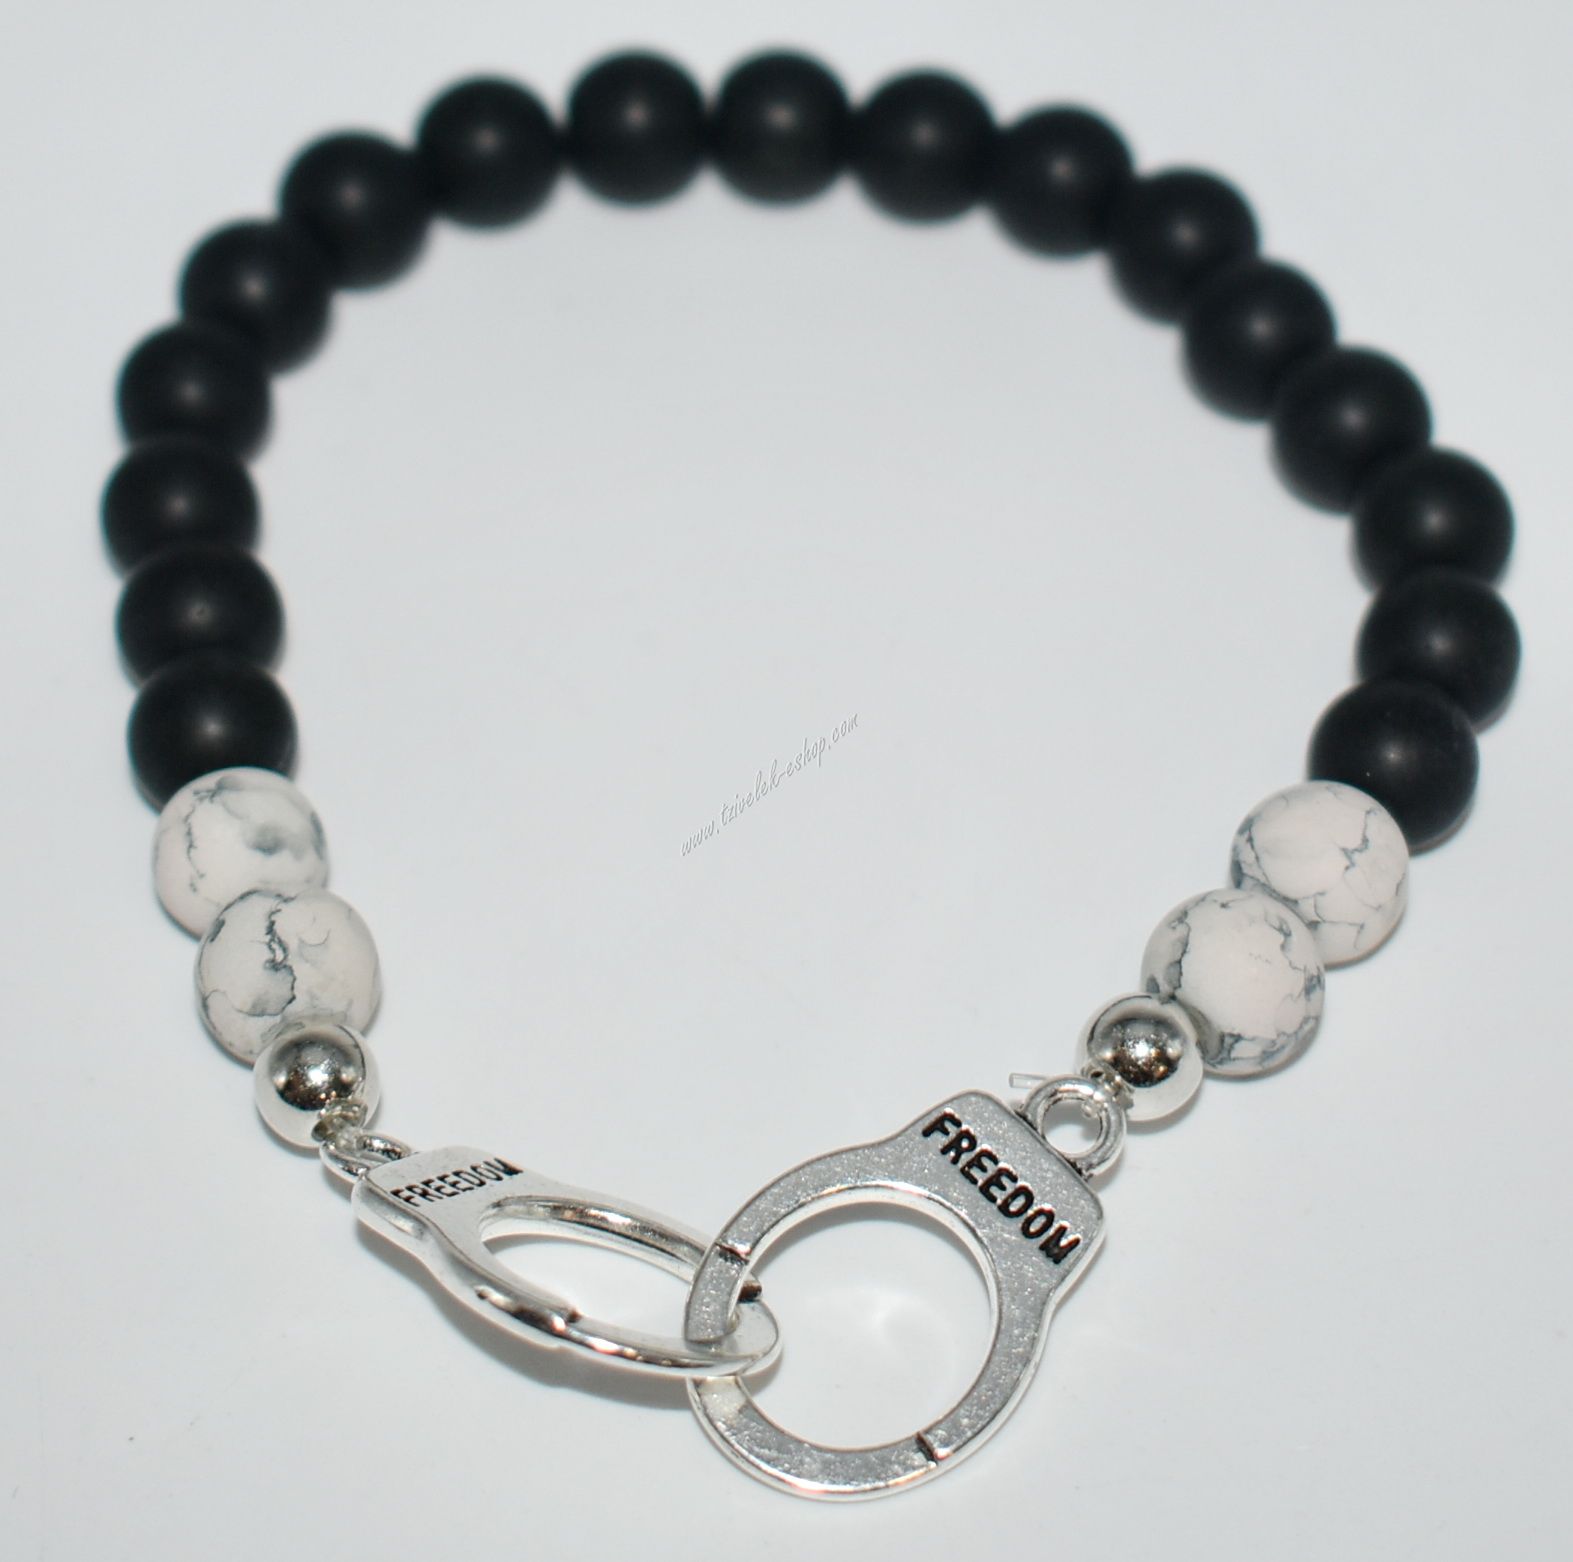 βραχιόλι χάντρα- bracelet 14522